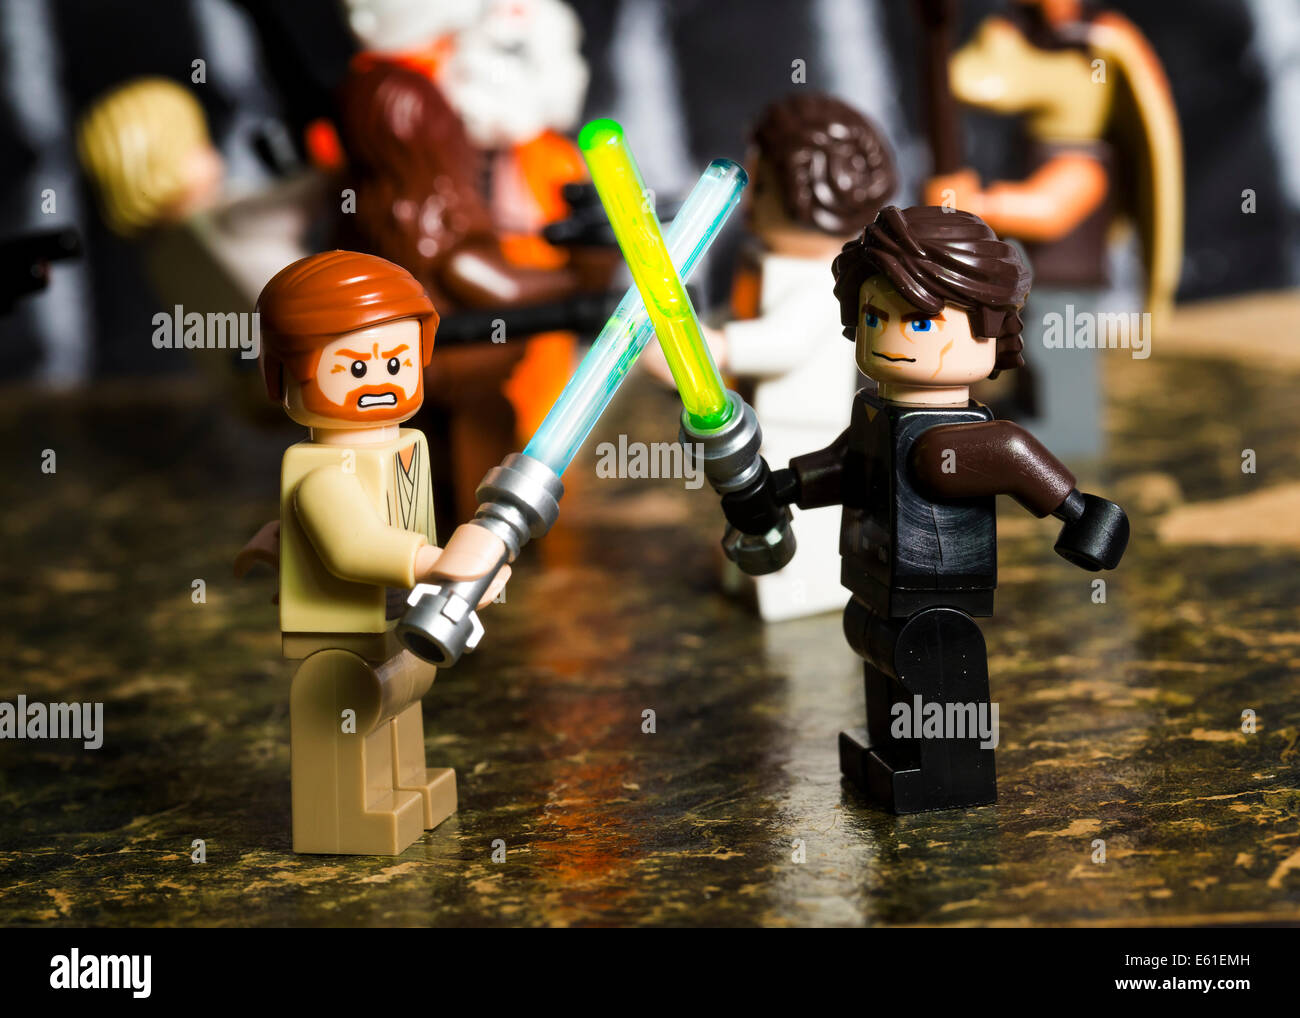 Lego Star Wars figuras de Obi Wan Kenobi y Anakin Skywalker, uno frente a  otro con lightsabers. Otras figuras detrás Fotografía de stock - Alamy